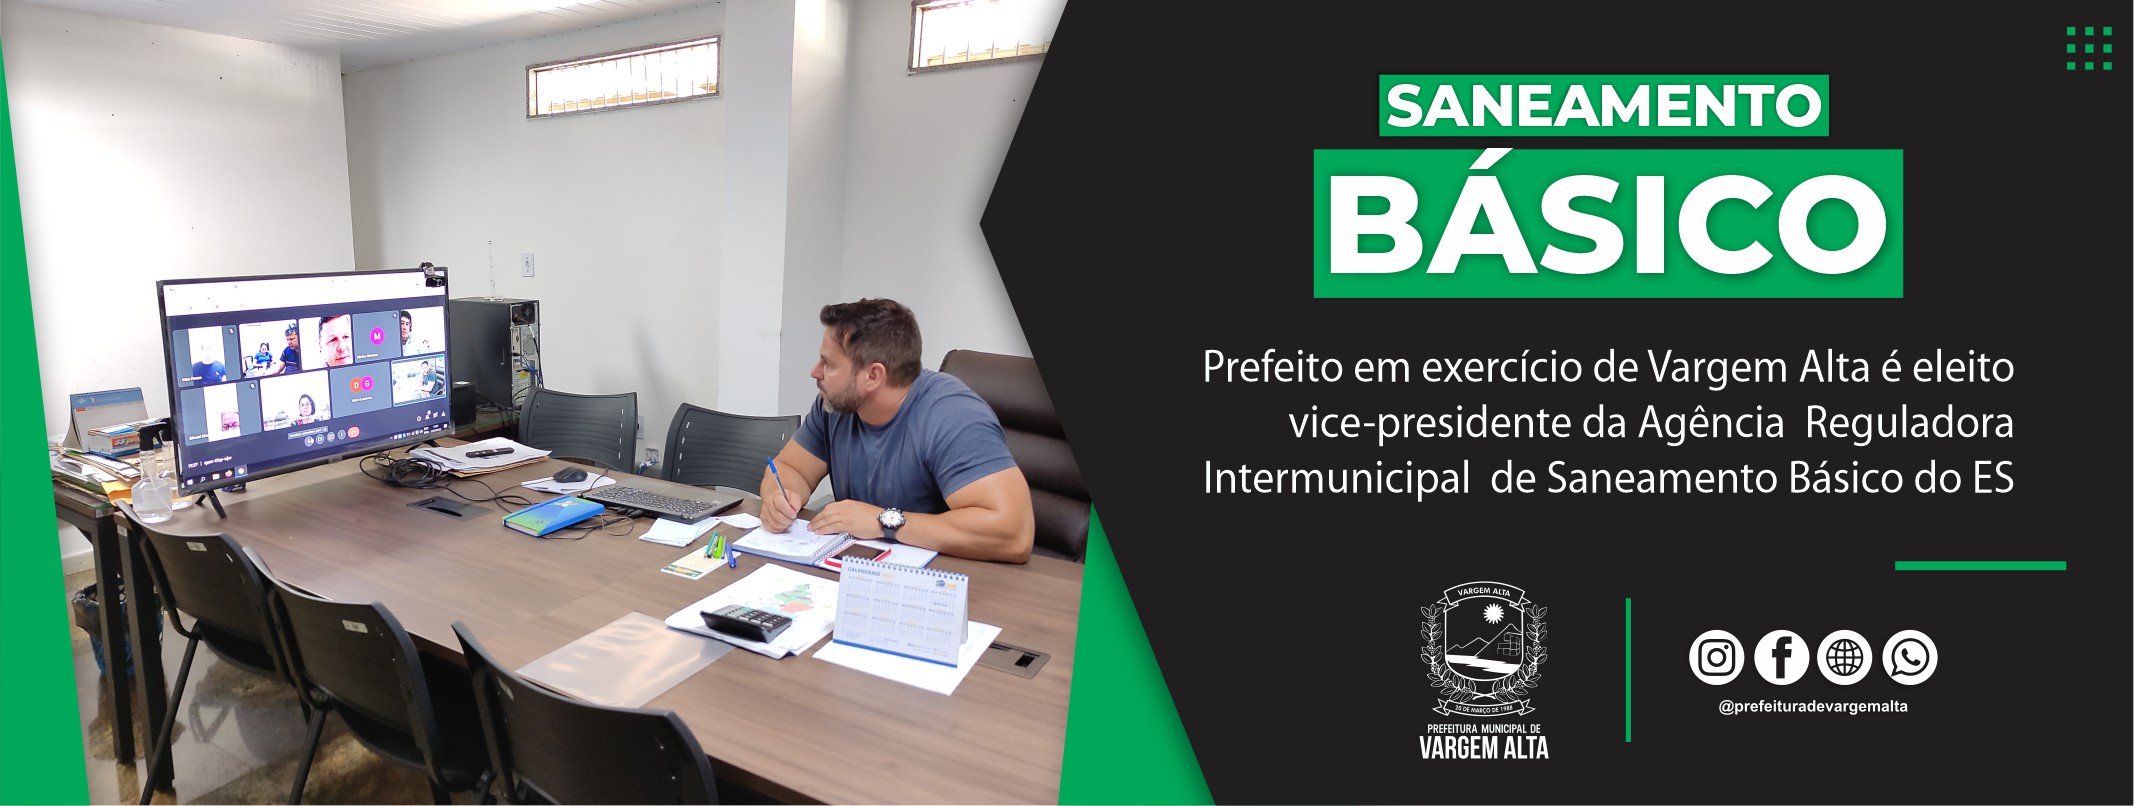 Prefeito em exercício de Vargem Alta é eleito vice-presidente da Agência Reguladora Intermunicipal de Saneamento Básico do Espírito Santo